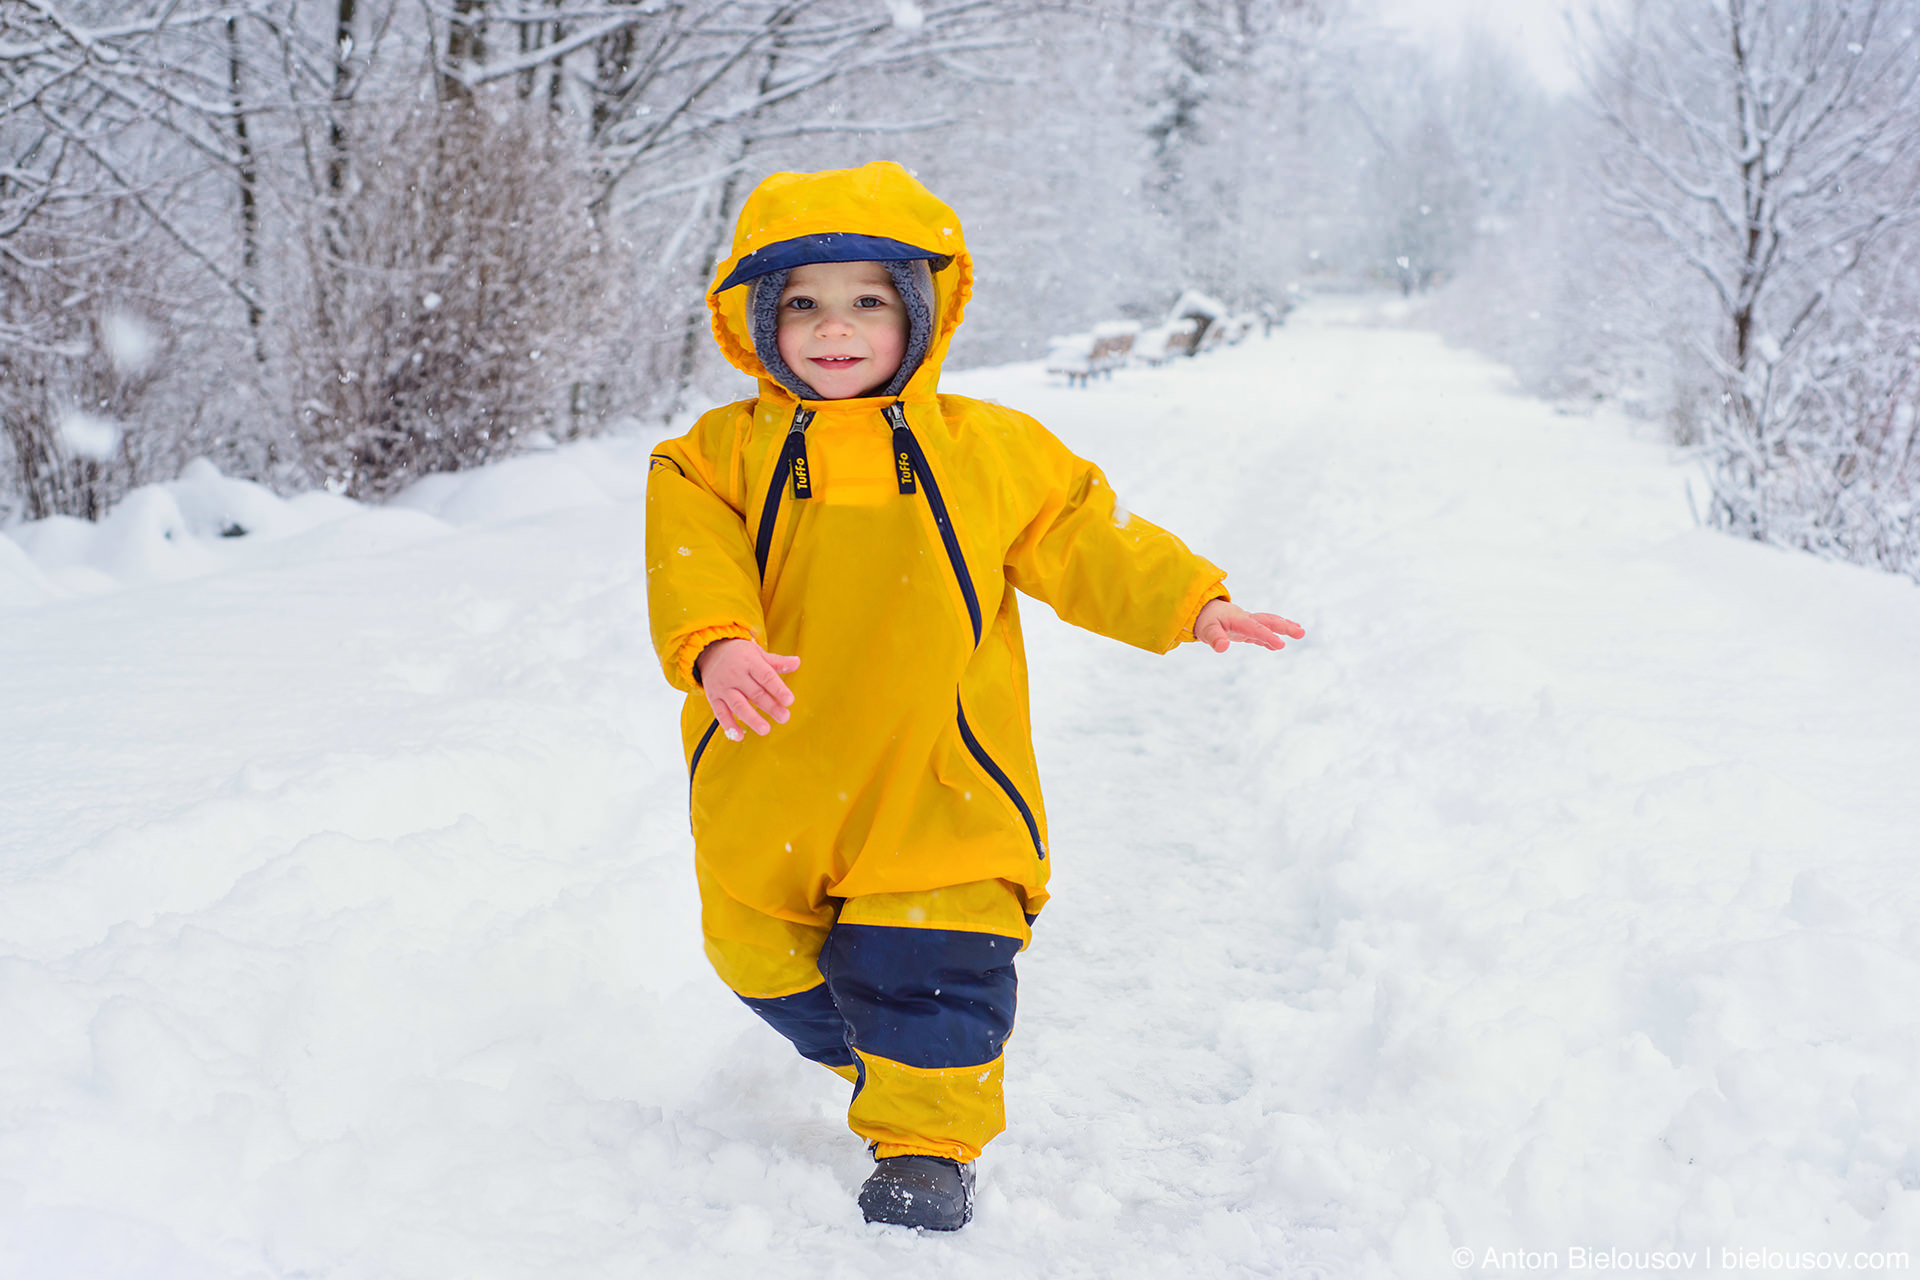 Шаги по снегу. Первые шаги по снегу. Шаги по снегу ребенка. Шаги снег детская.